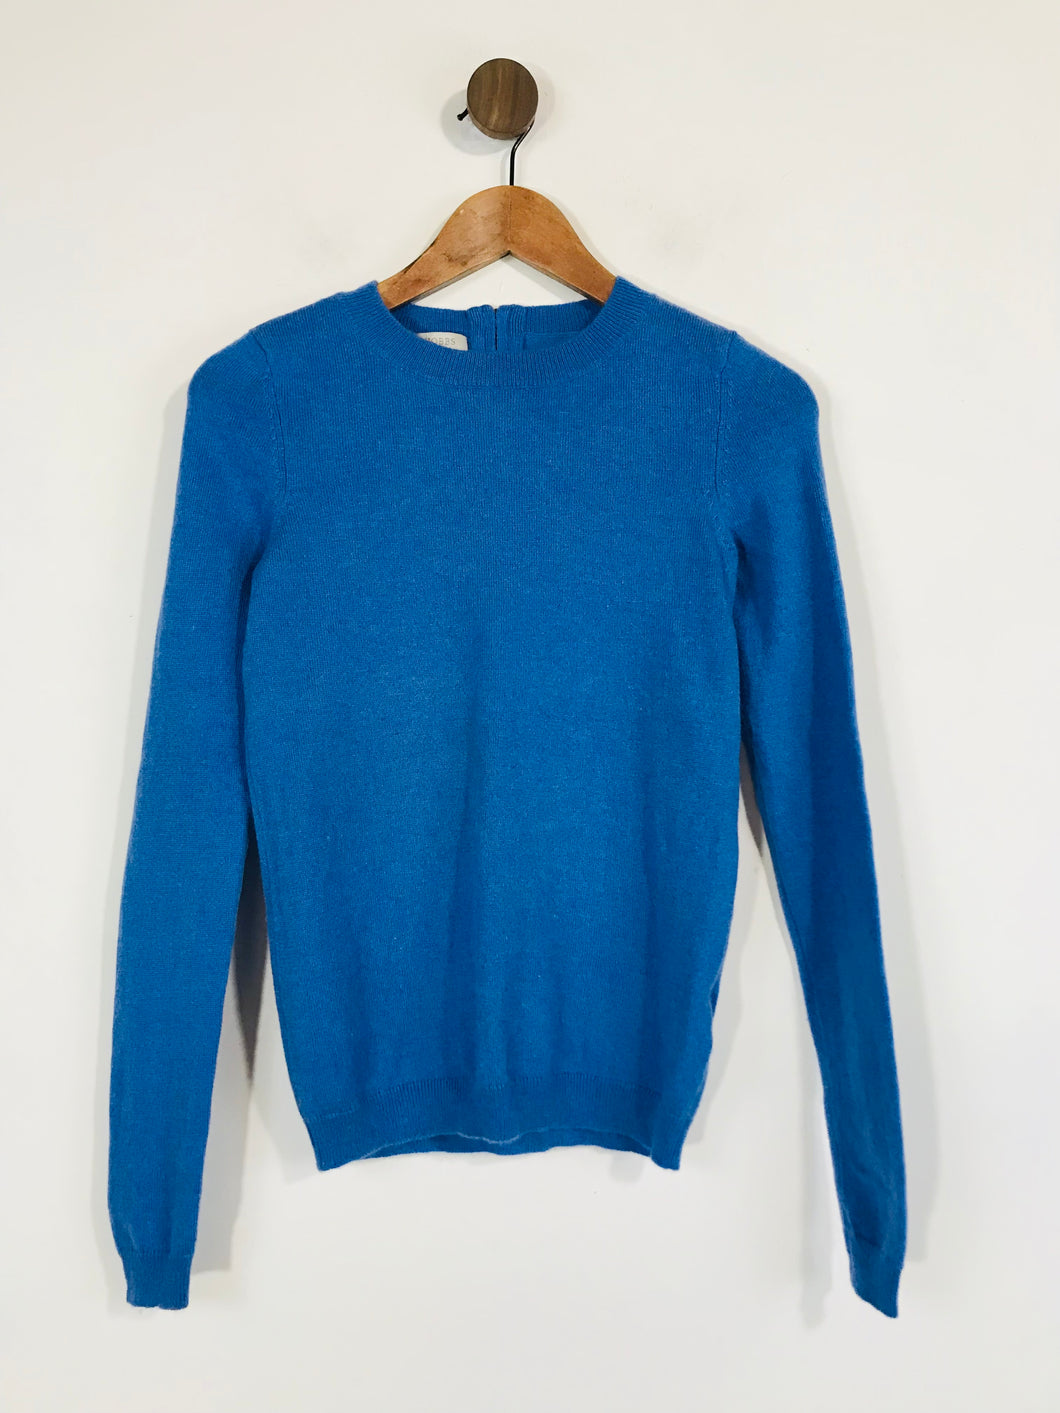 Hobbs Women's Cashmere Wool Jumper | XS UK6-8 | Blue